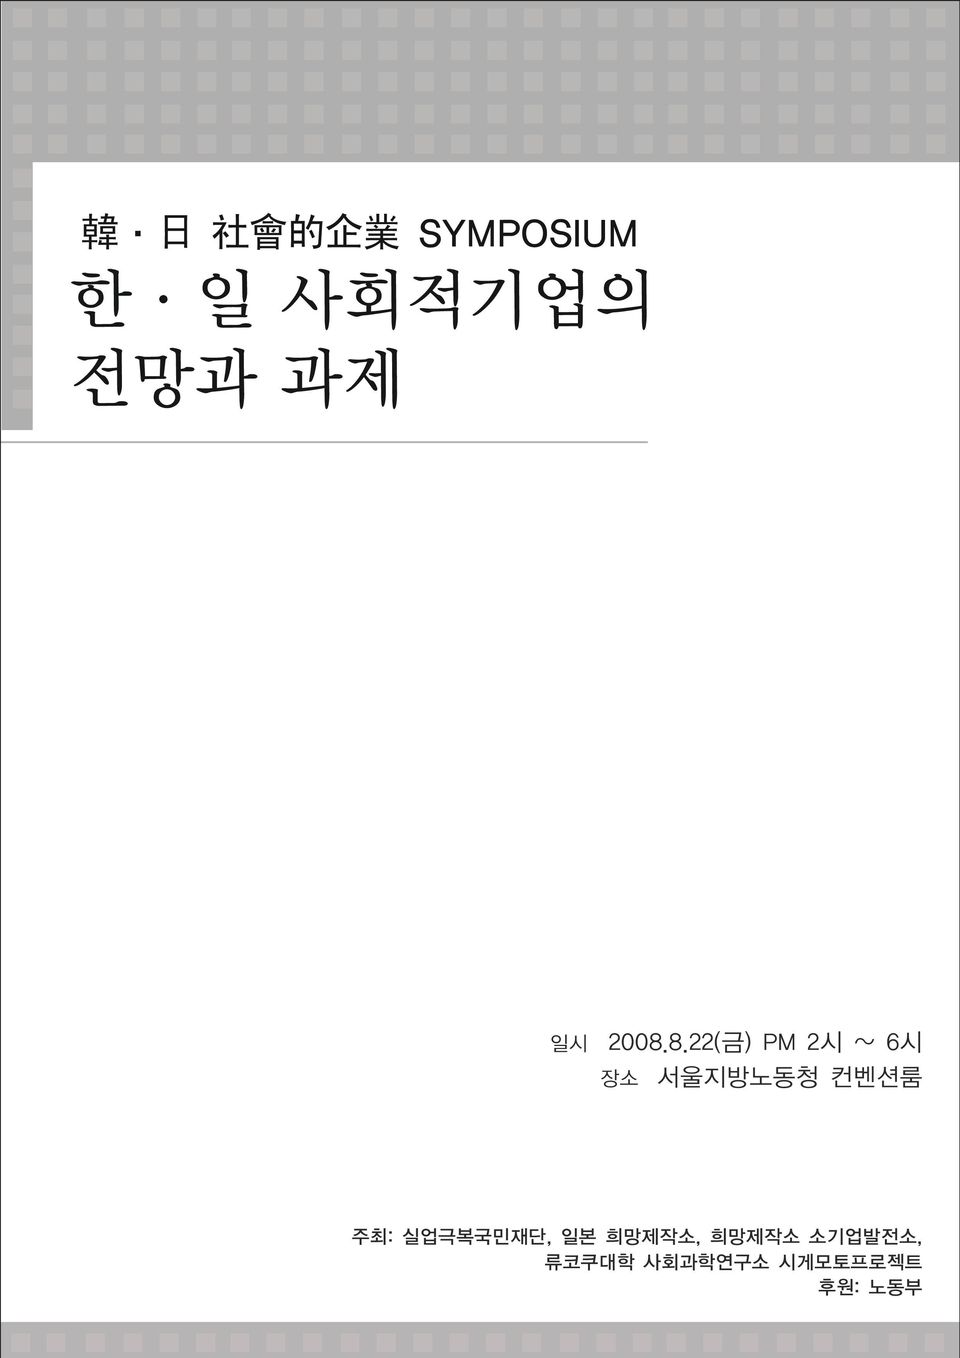 8.22(금) PM 2시 ~ 6시 장소 서울지방노동청 컨벤션룸 주최: